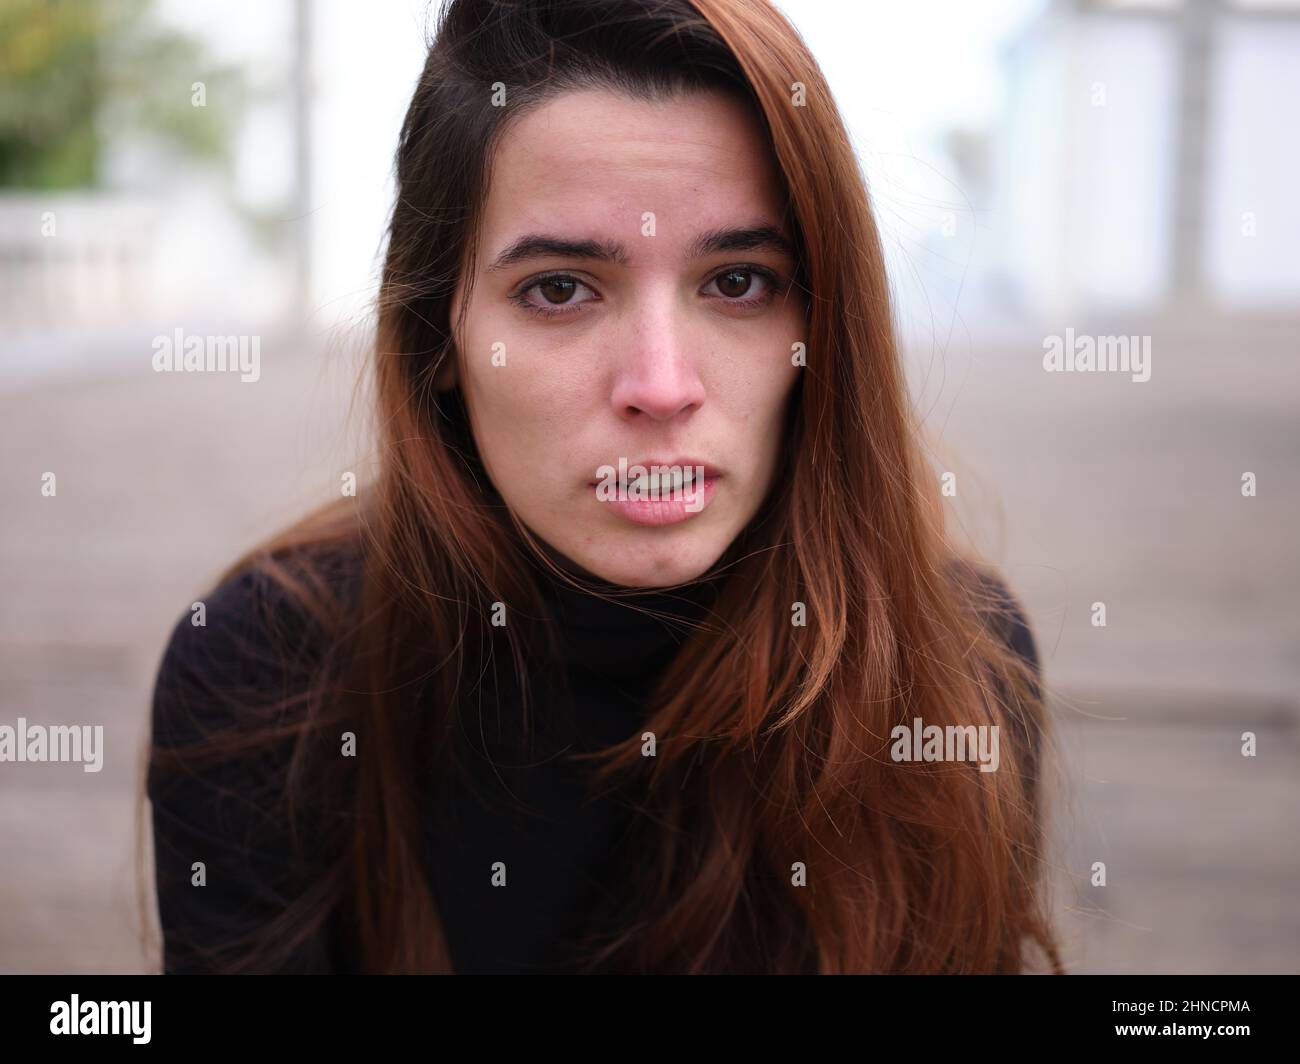 Ein trauriges junges Mädchen, das die Kamera ansieht, weint vor unfokussierter Kulisse. Stockfoto